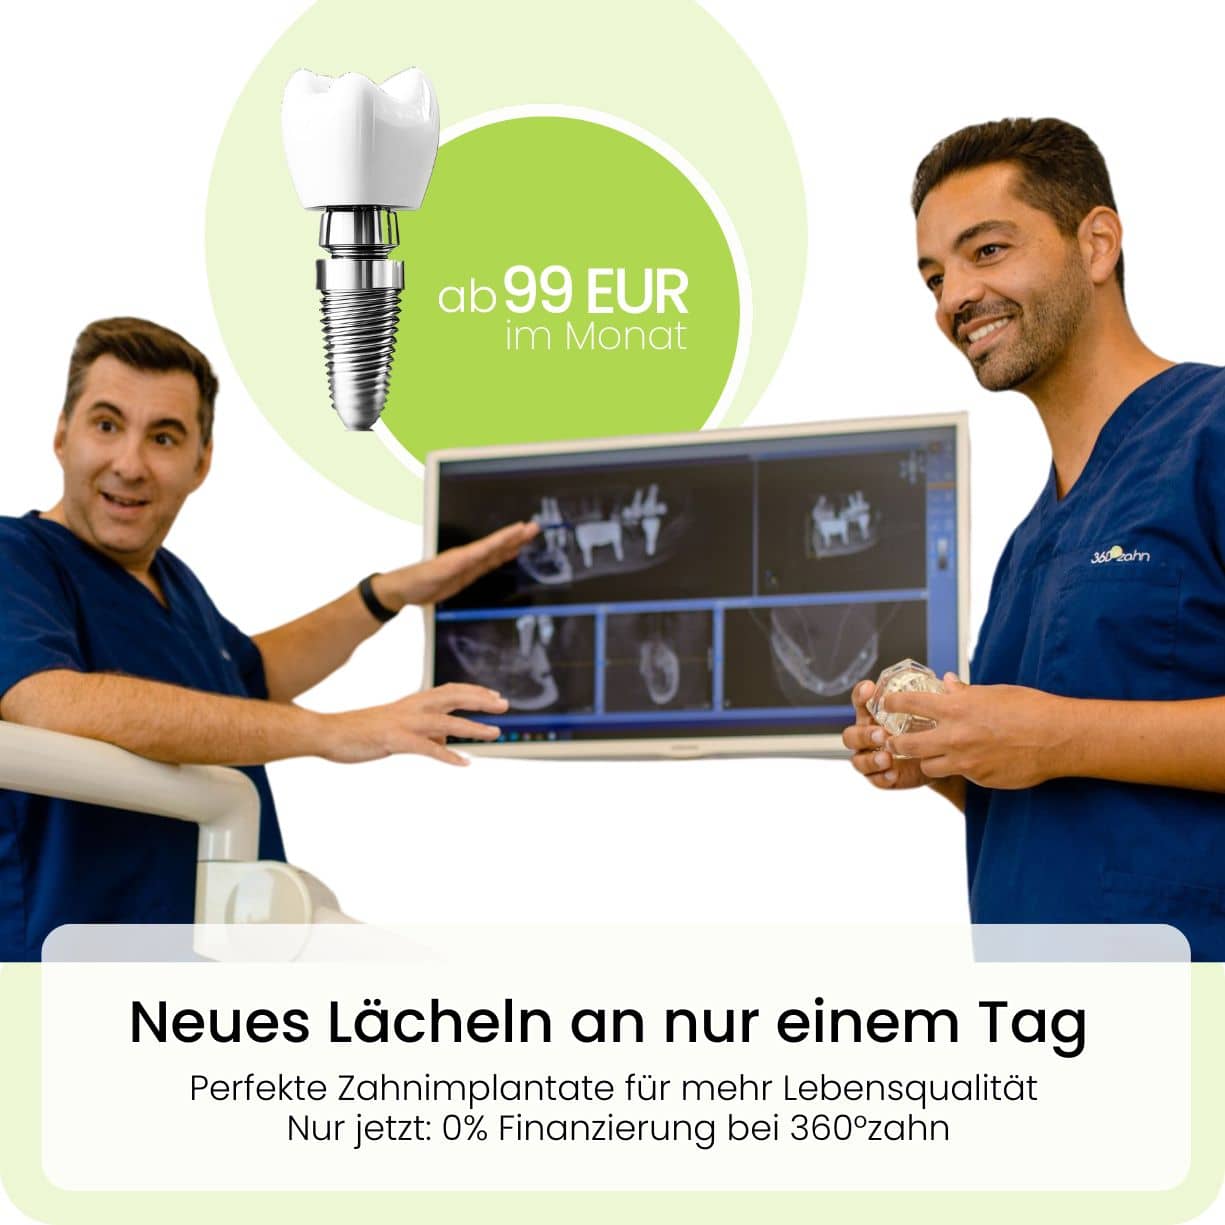 Zahnimplantate Düsseldorf ab 99 EUR : Monat - 360°zahn